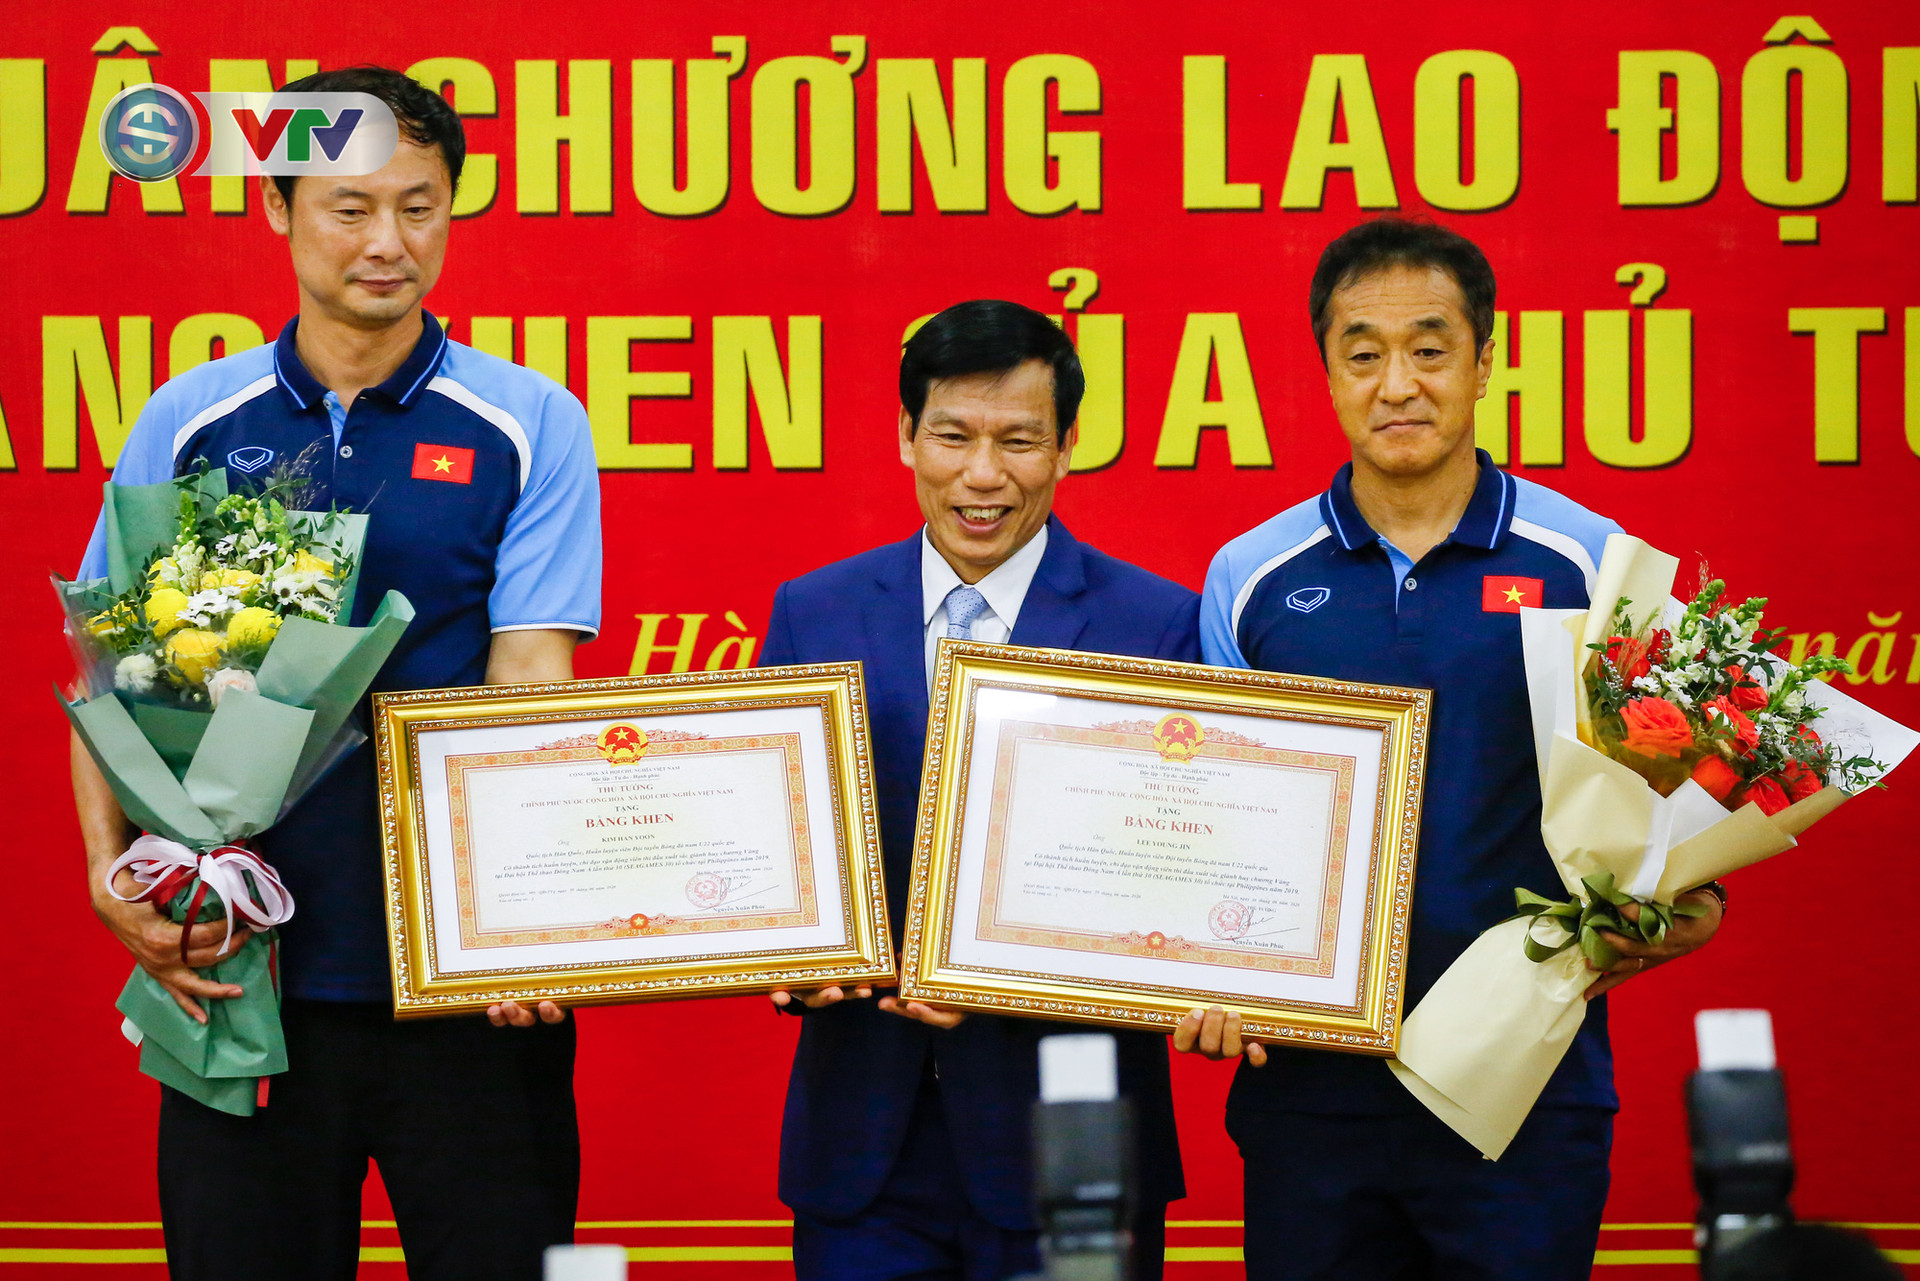 HLV Park Hang Seo nhận vinh dự chưa từng có trong lịch sử bóng đá Việt Nam - Ảnh 3.